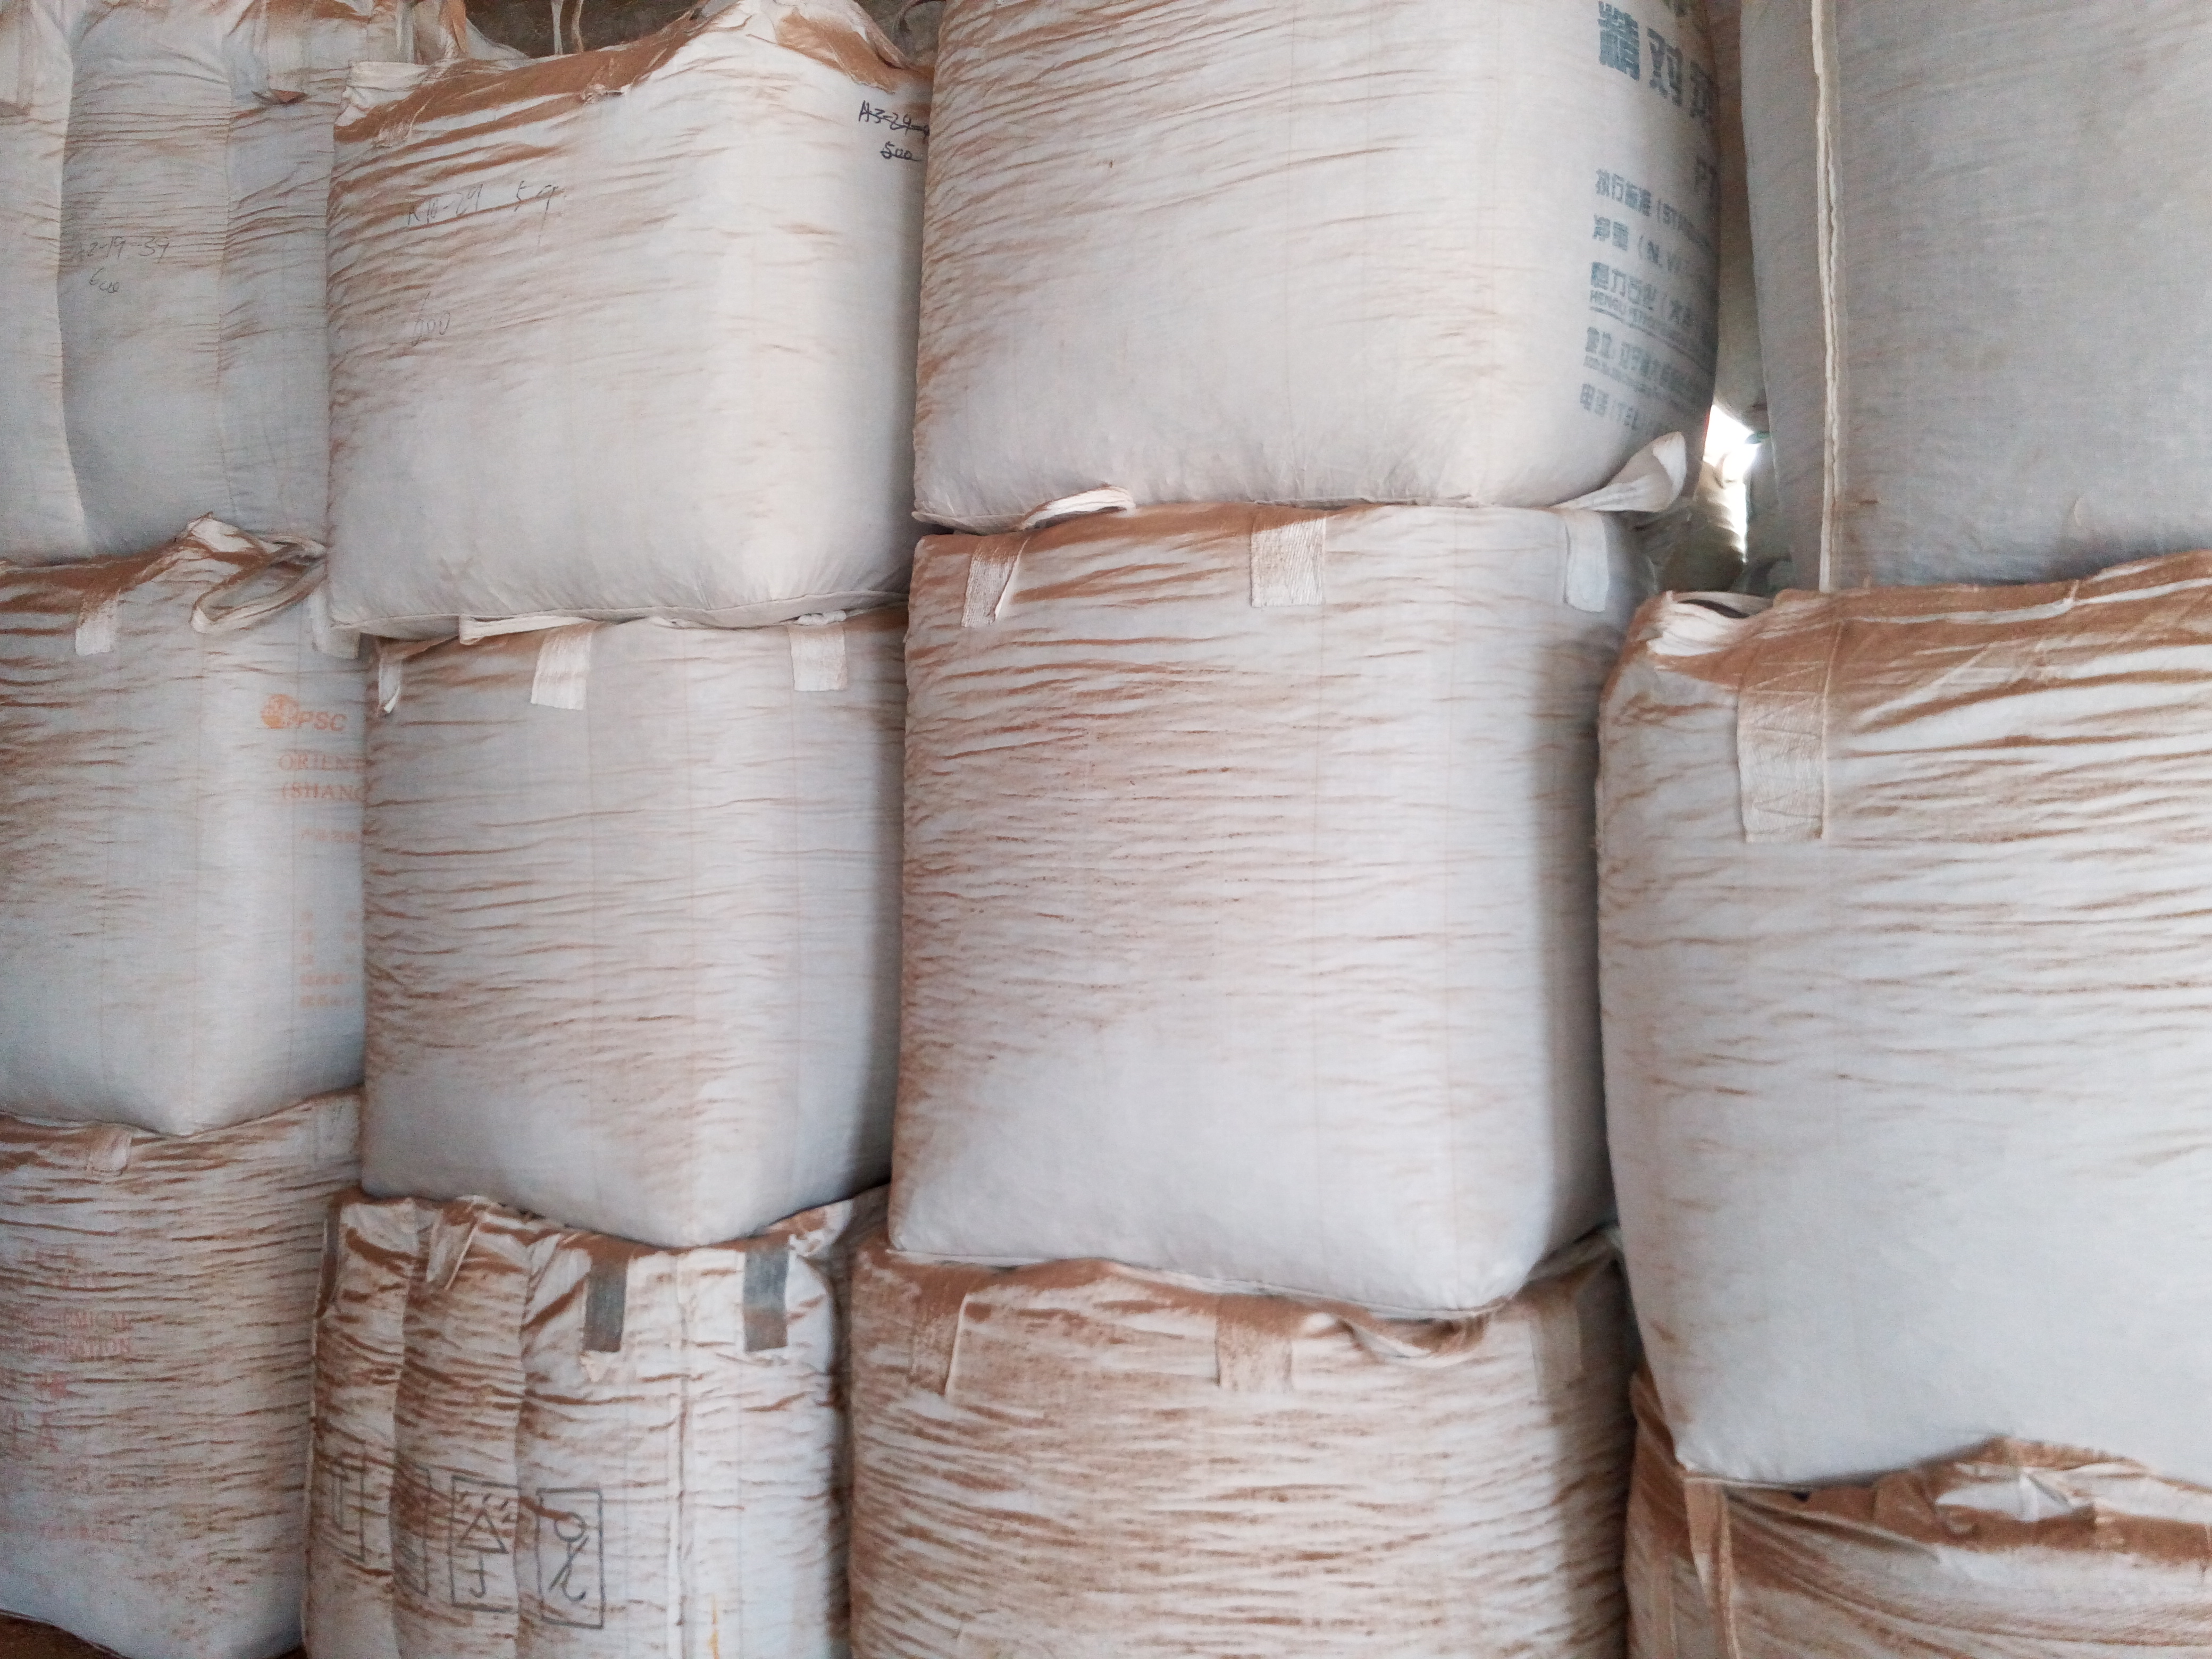 嘉兴市木屑颗粒厂家供应浙江嘉善木屑颗粒生产厂家长期出售生物质颗粒燃料